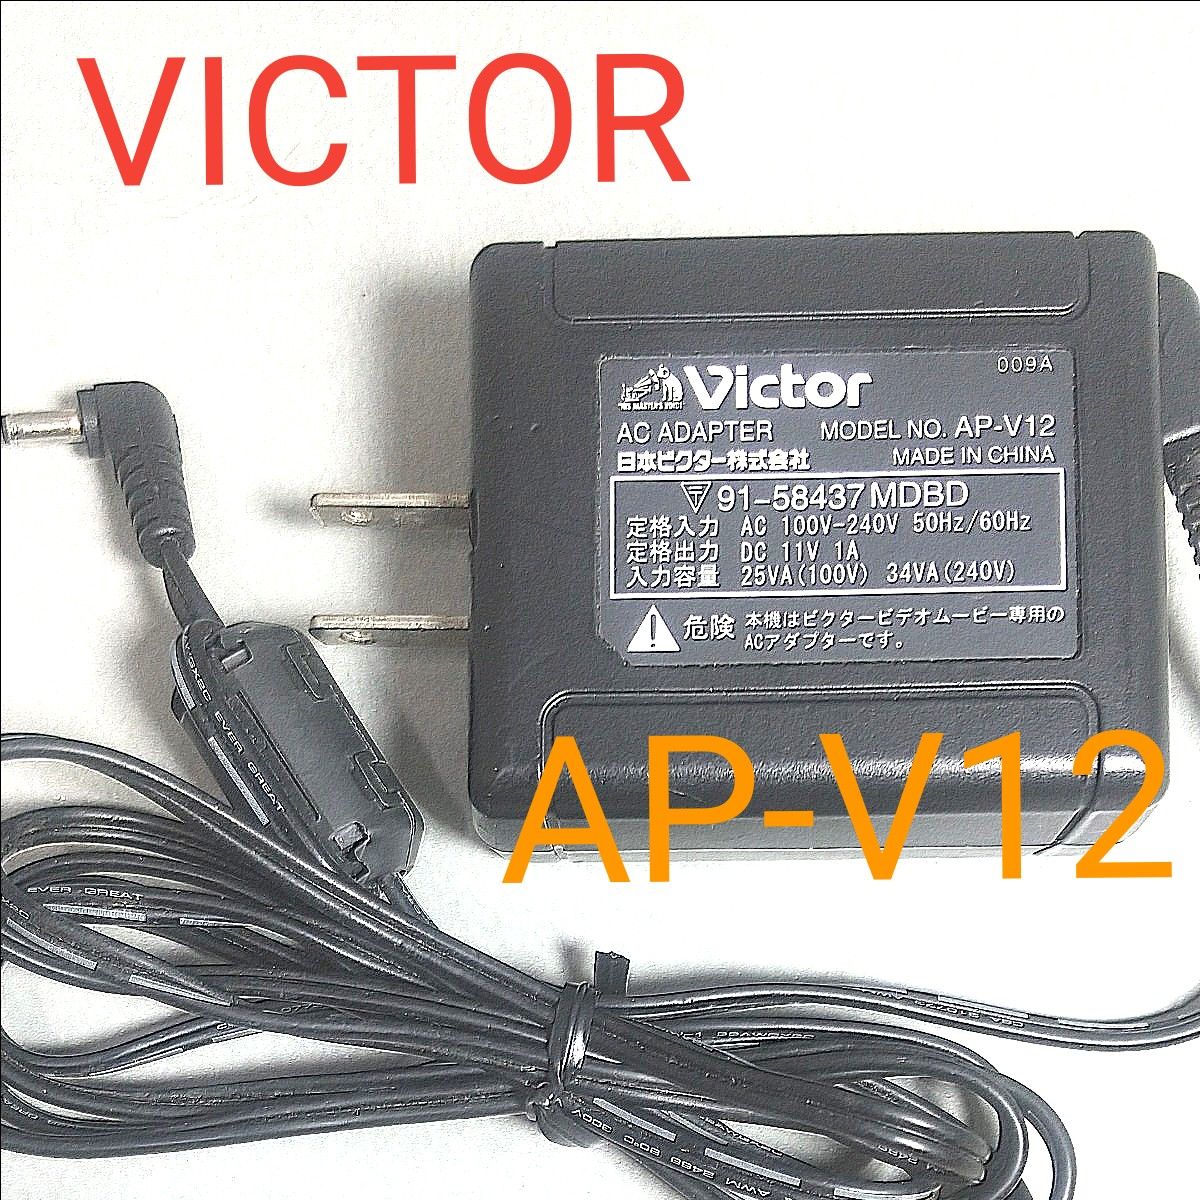 ビクター ACアダプター AP-V12 Victor ビデオカメラ 充電器